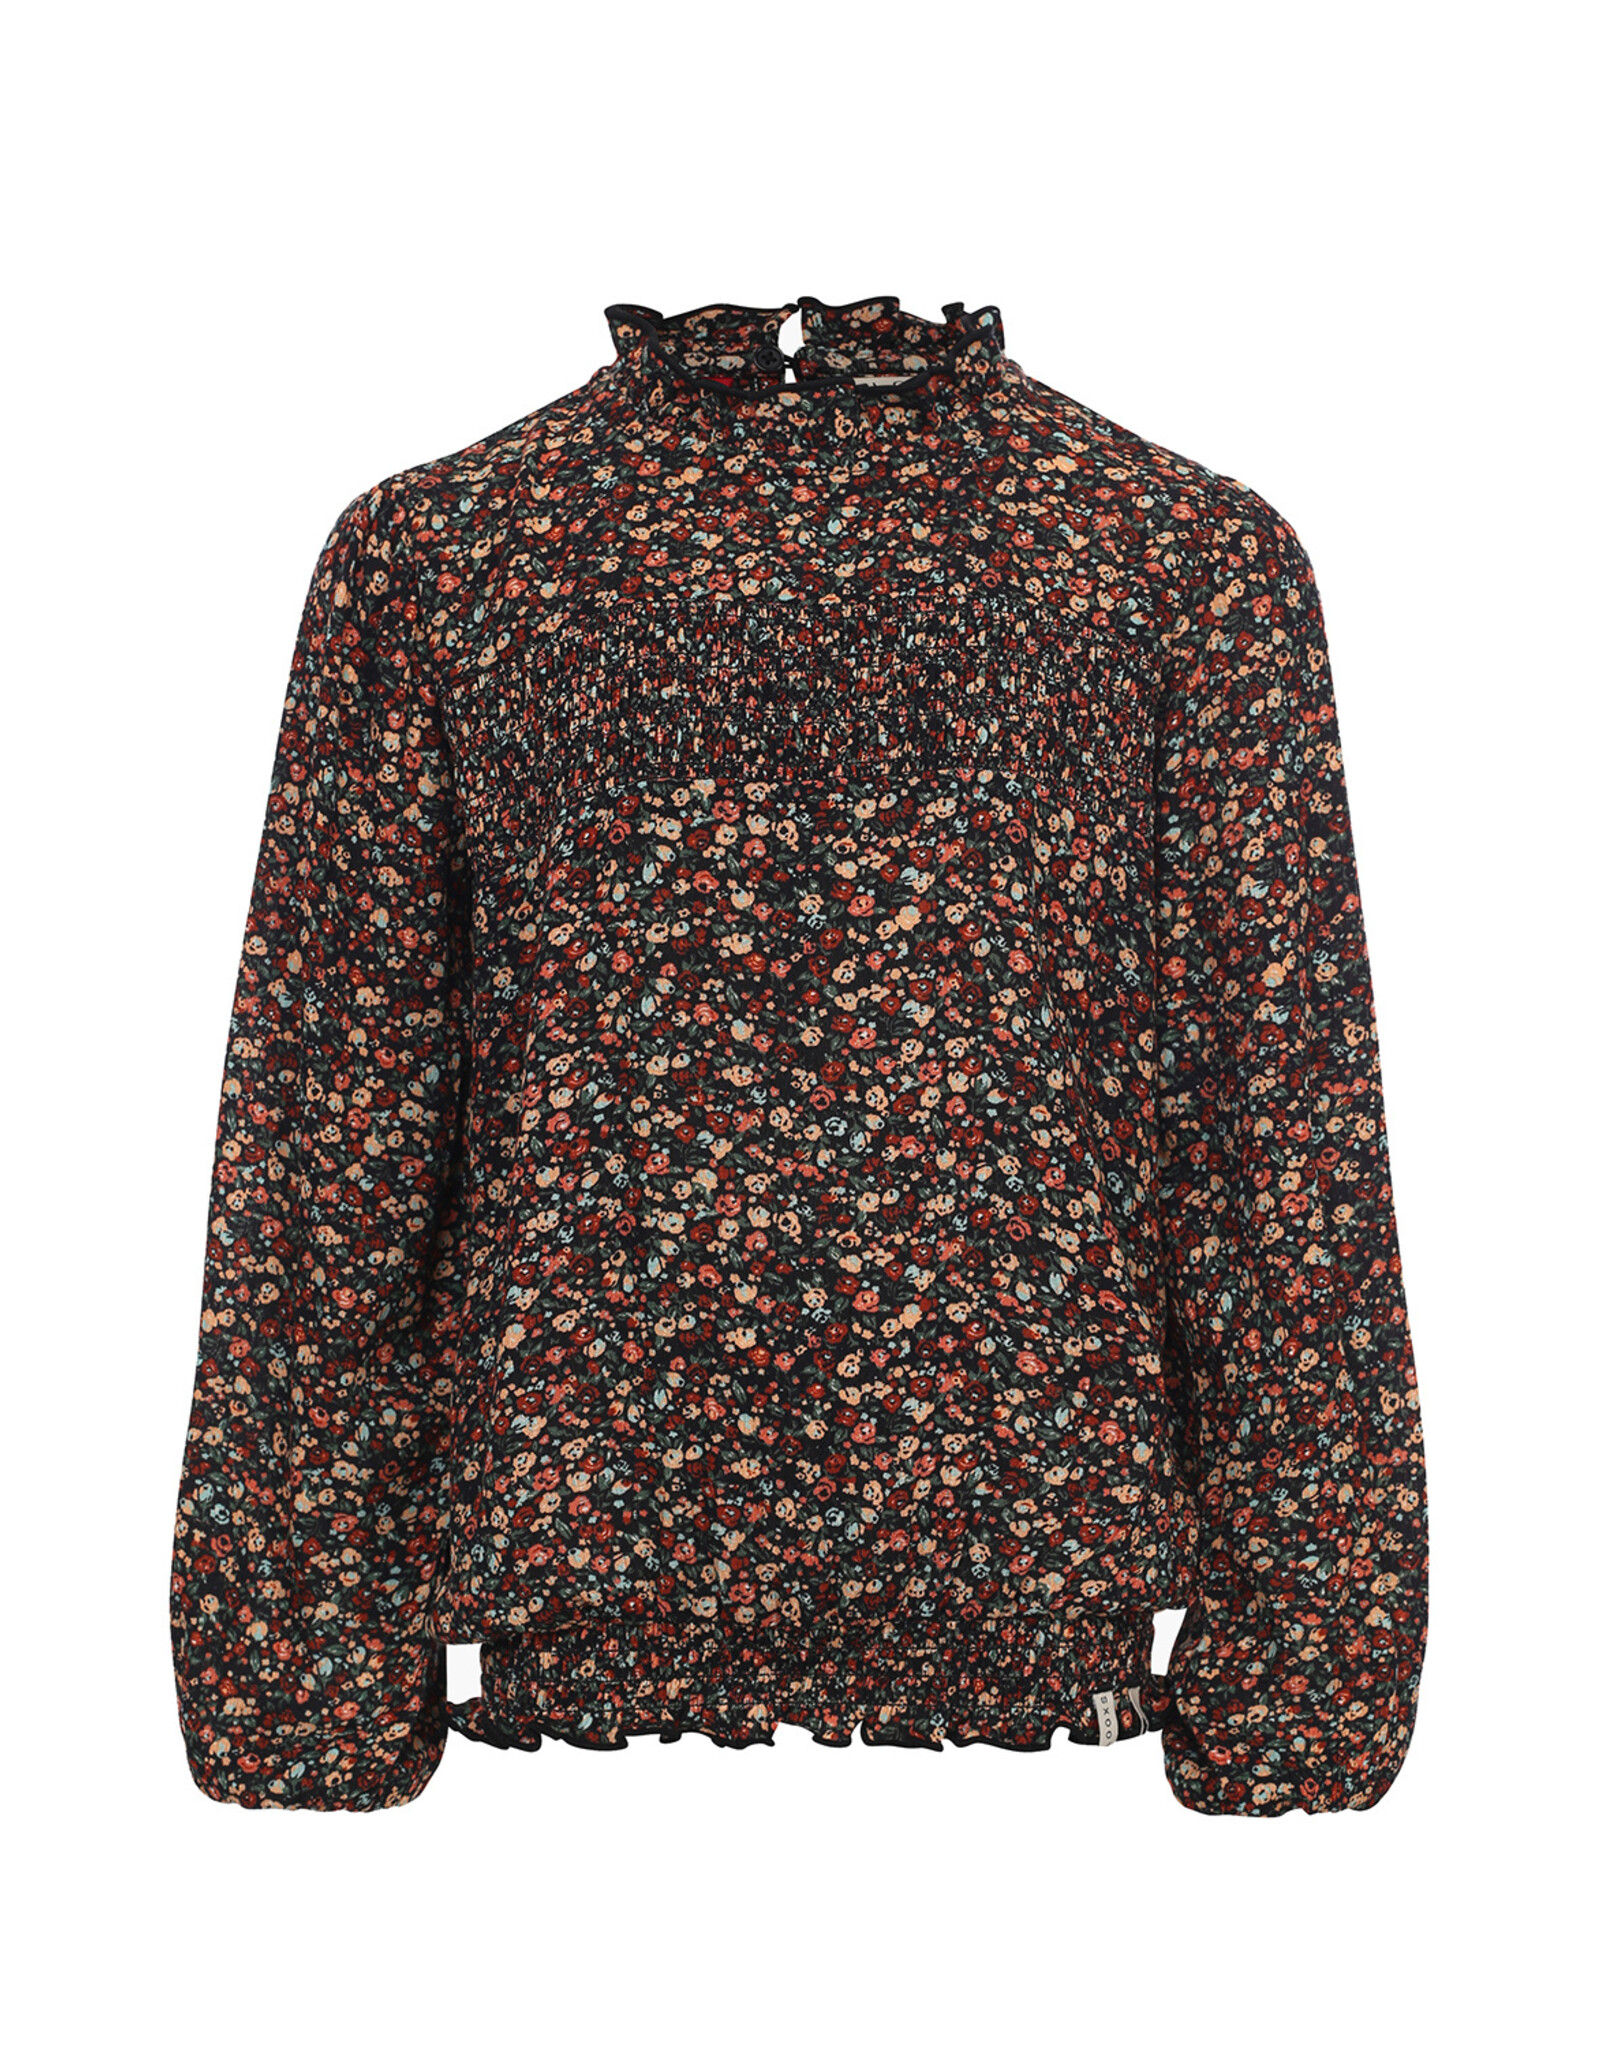 LOOXS Little blouses/tops Little floral crepe blouse Autumn blossom